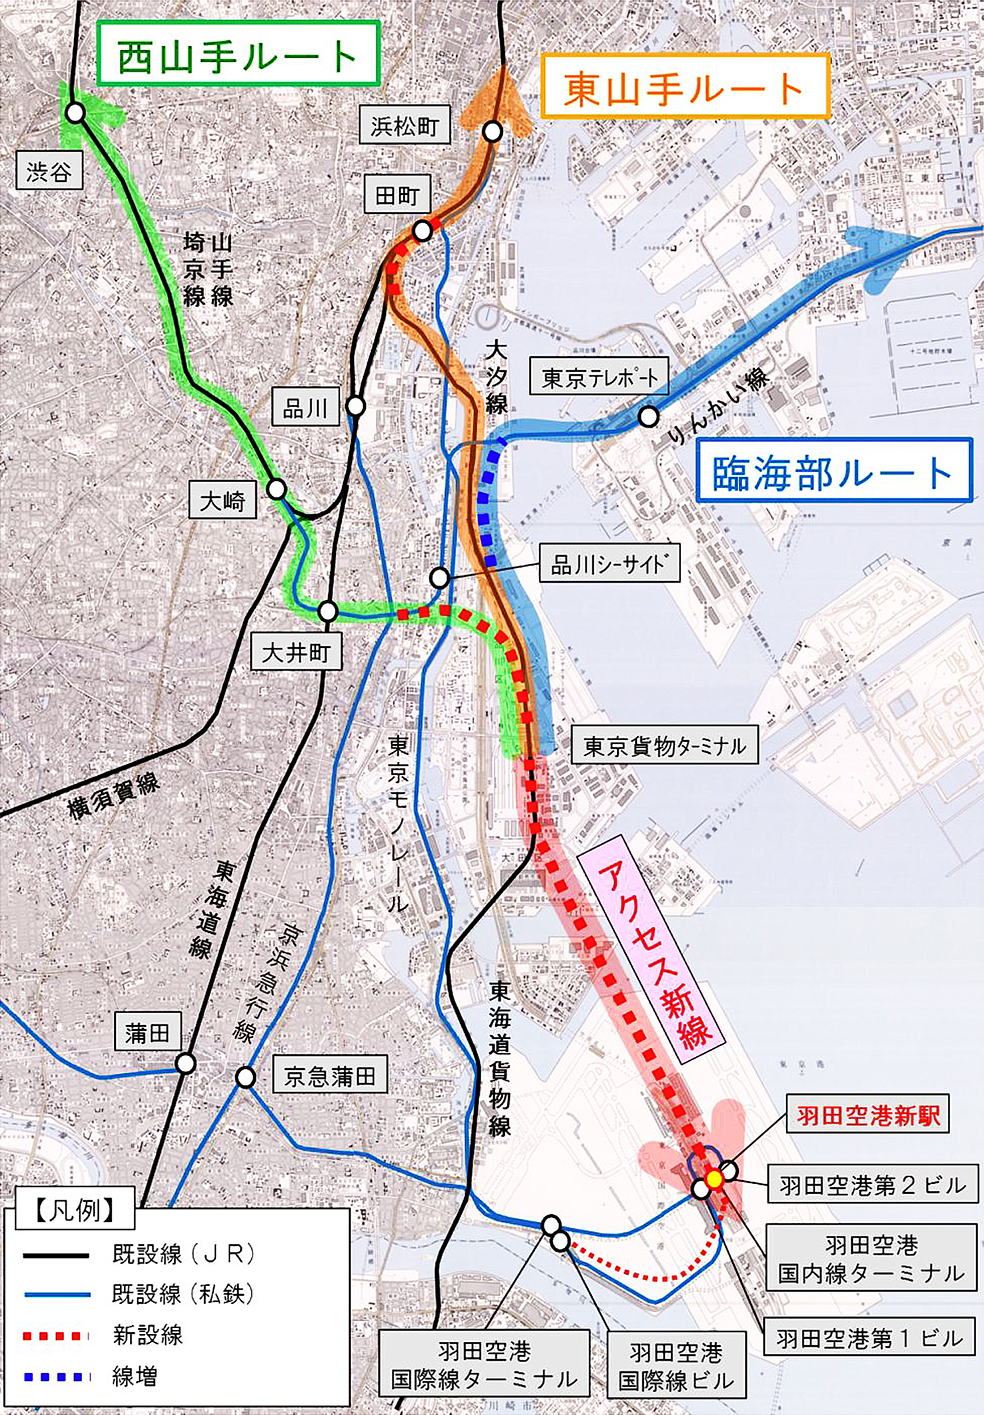 羽田空港アクセス線構想の概略図